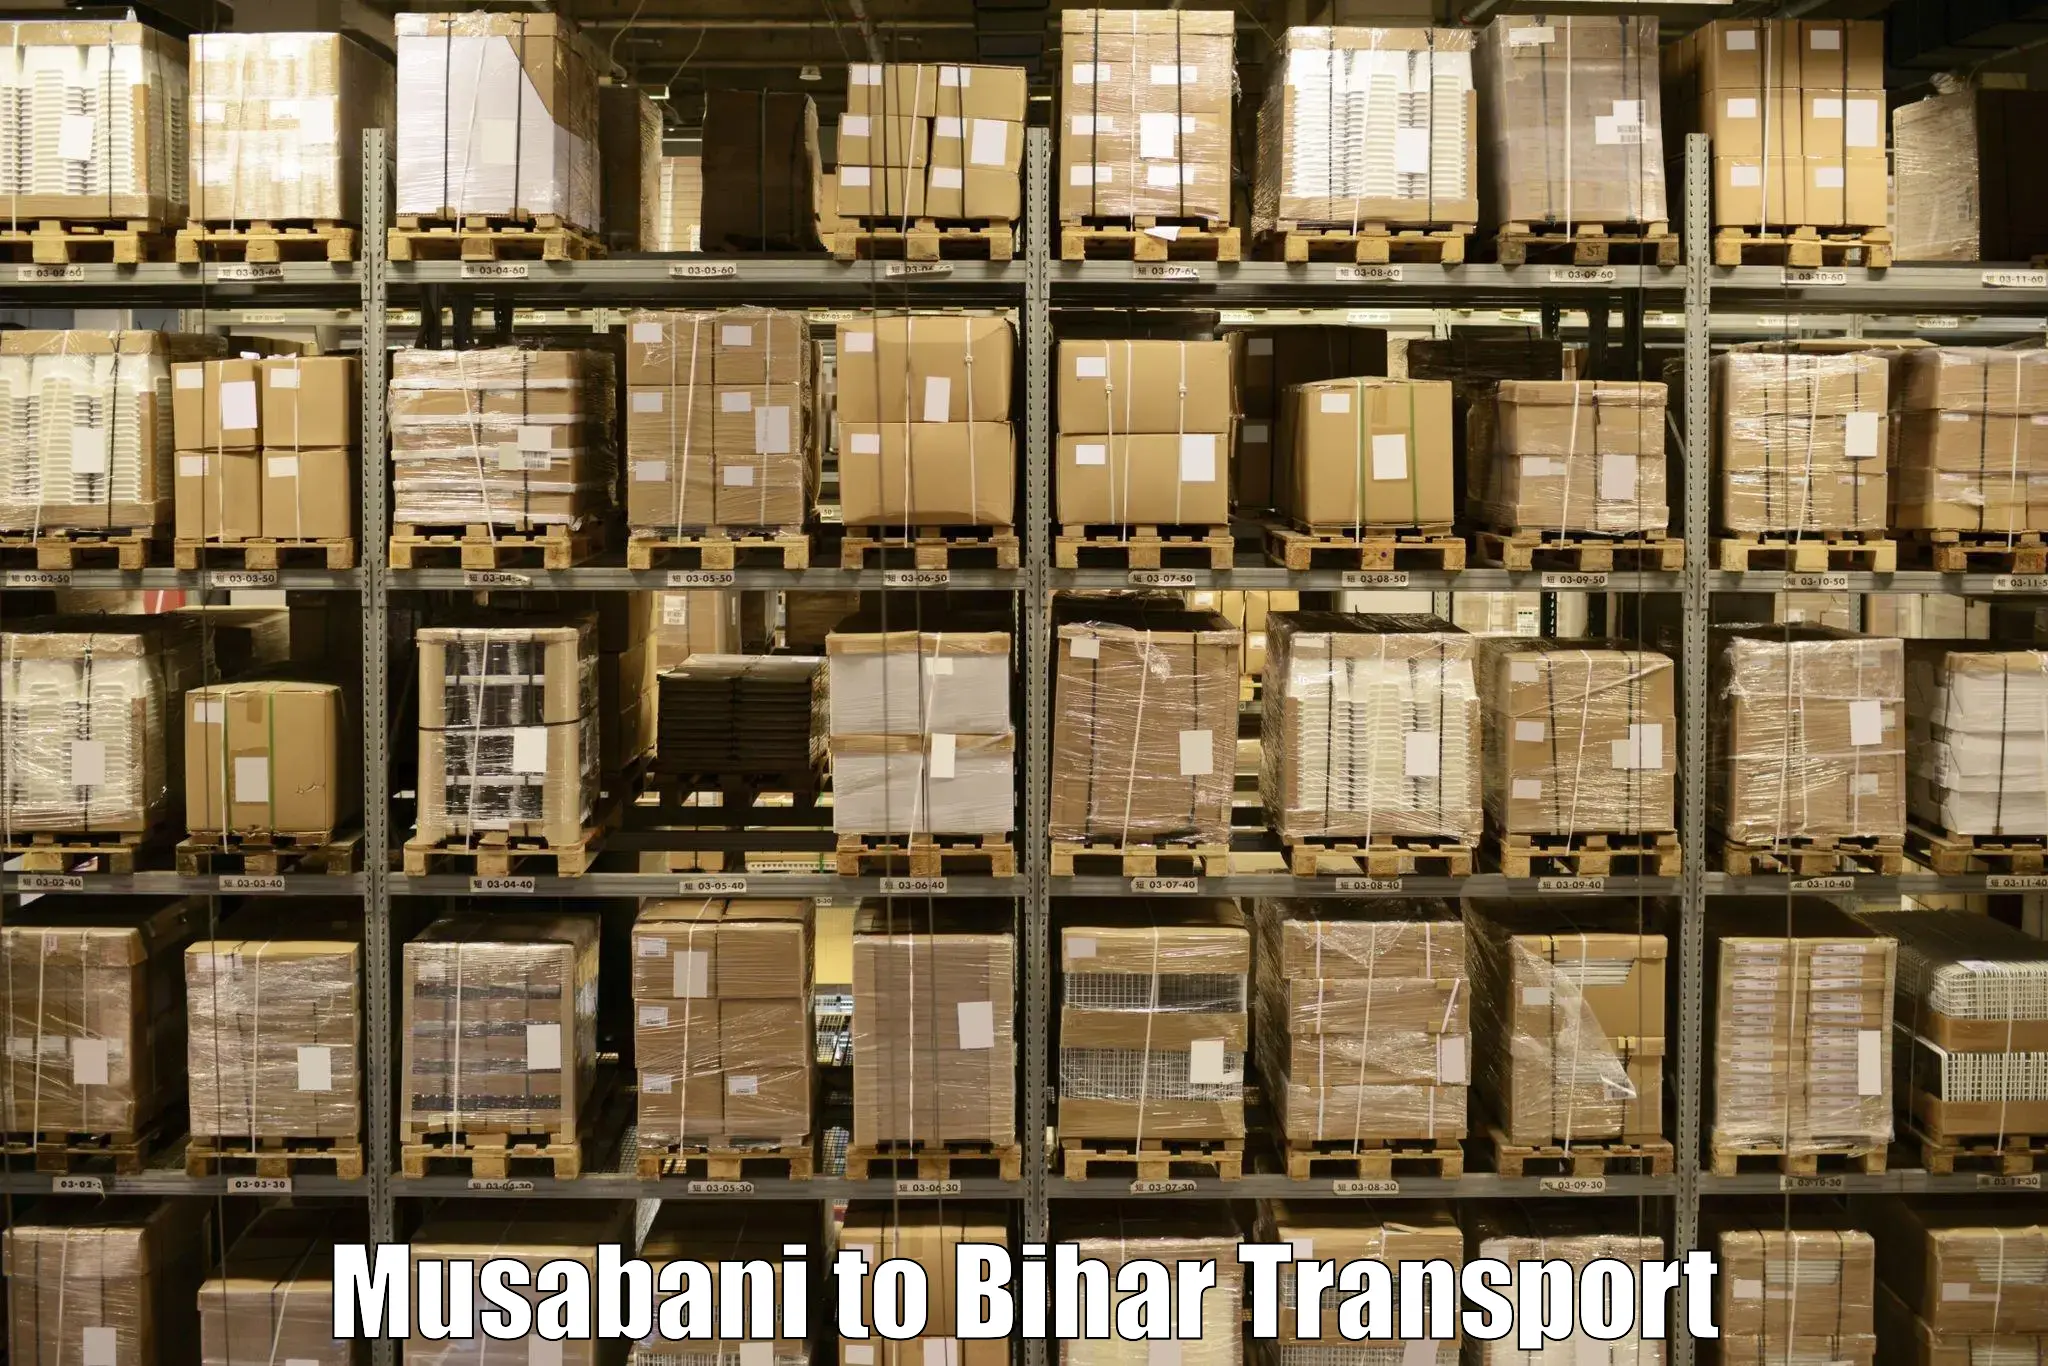 Door to door transport services Musabani to Bihar